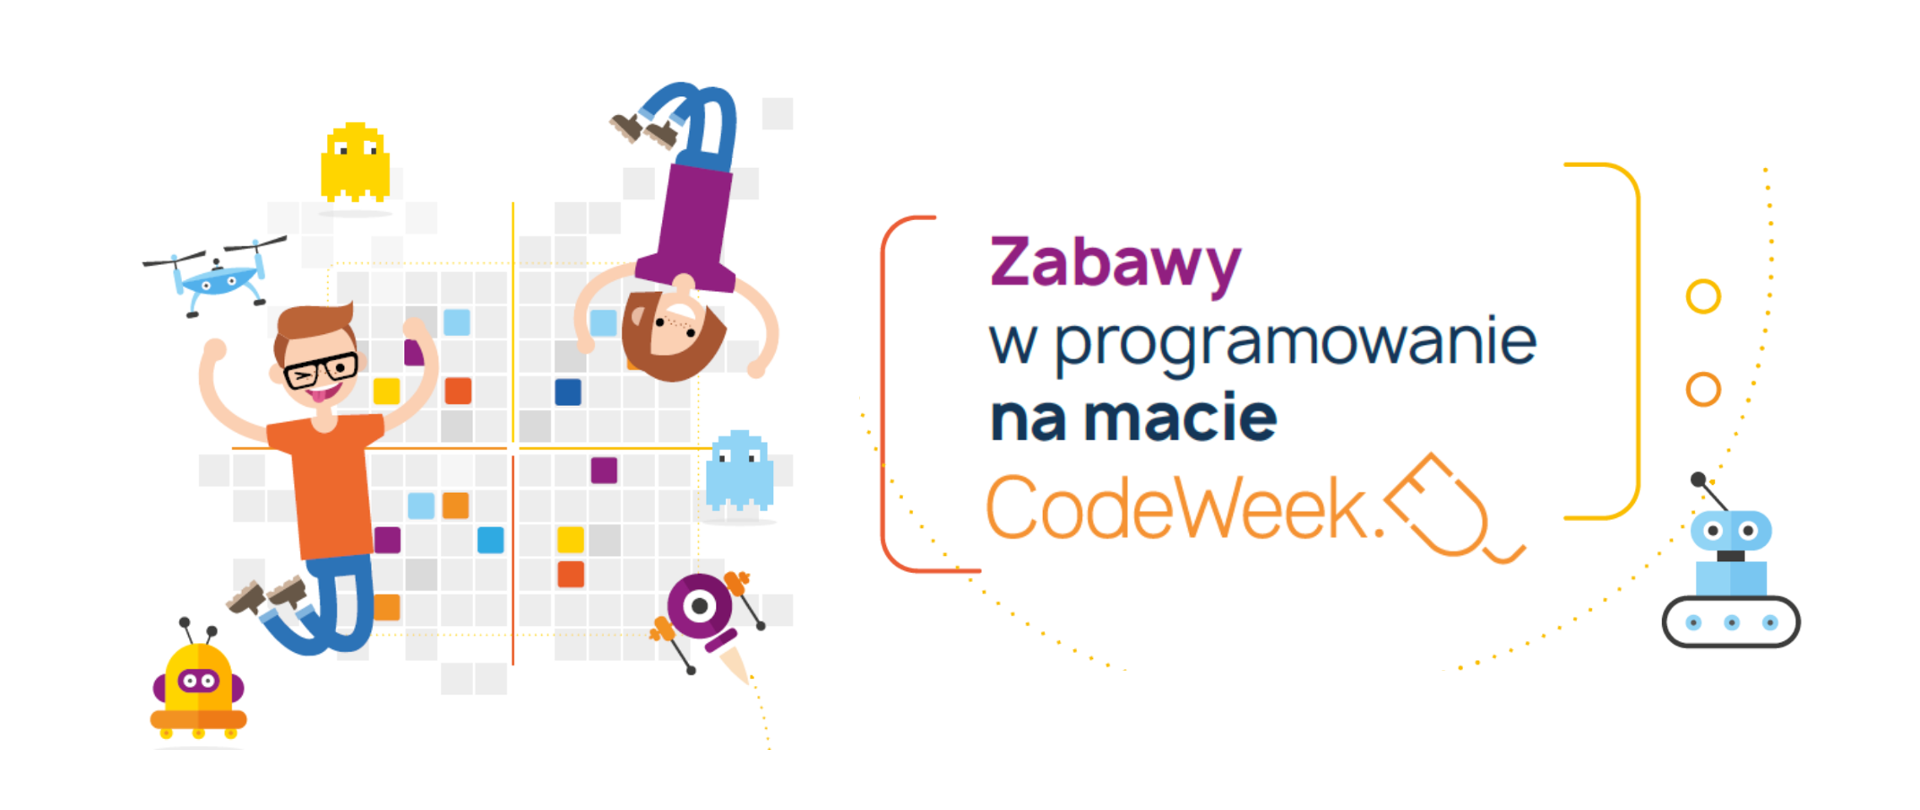 Grafika przedstawia animowaną ilustrację chłopca oraz dziewczynki na tle maty do kodowania. Obok grafiki widać napis: “Zabawy na macie. Poniżej znajduje się pomarańczowe logo “CodeWeek”. 